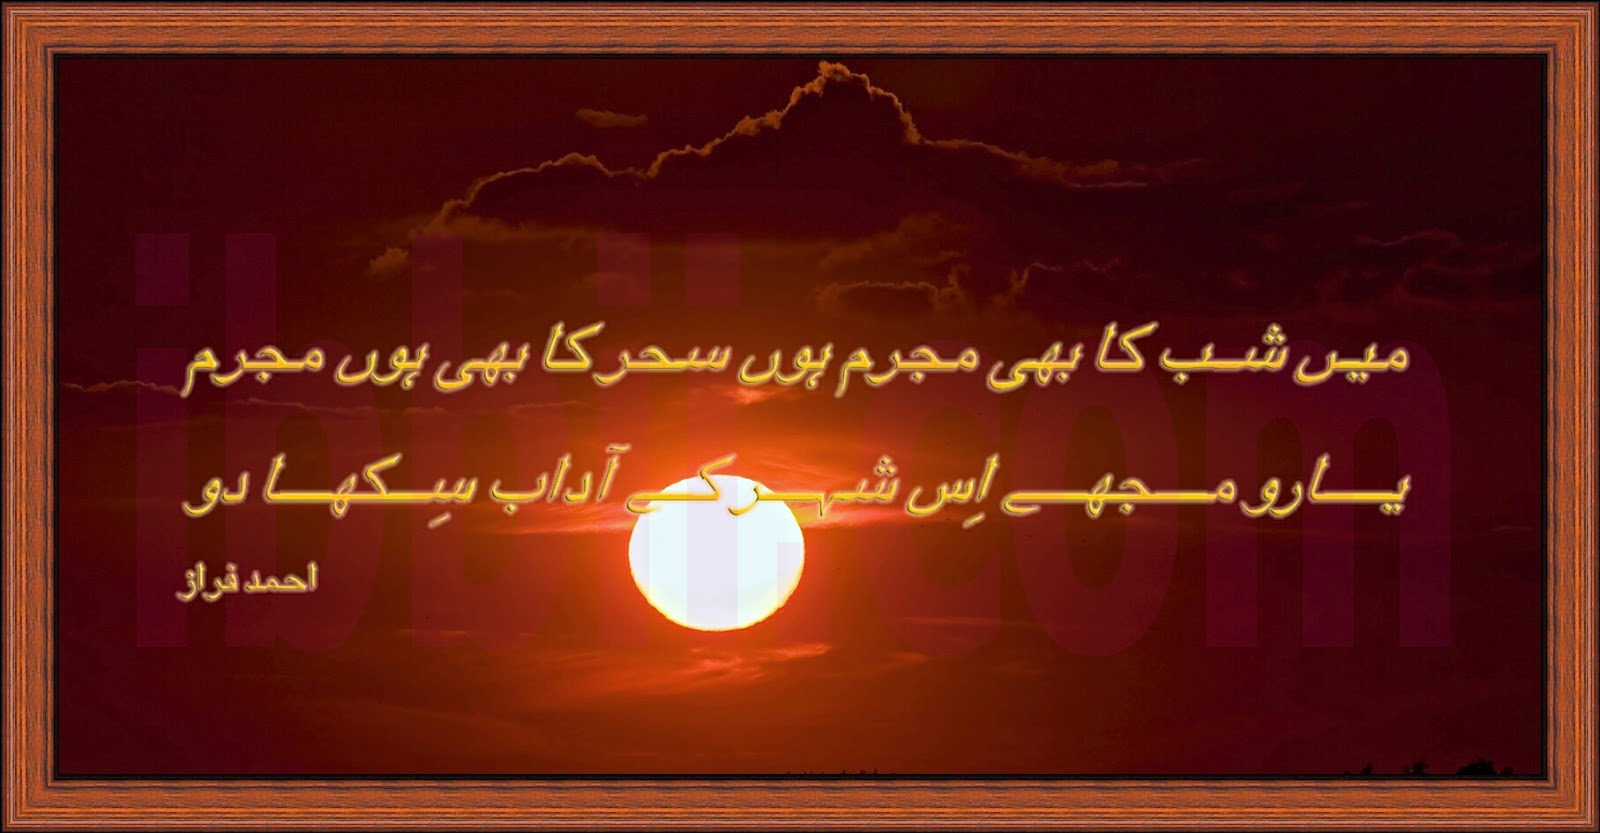 English Poetry Sindhi Punjabi